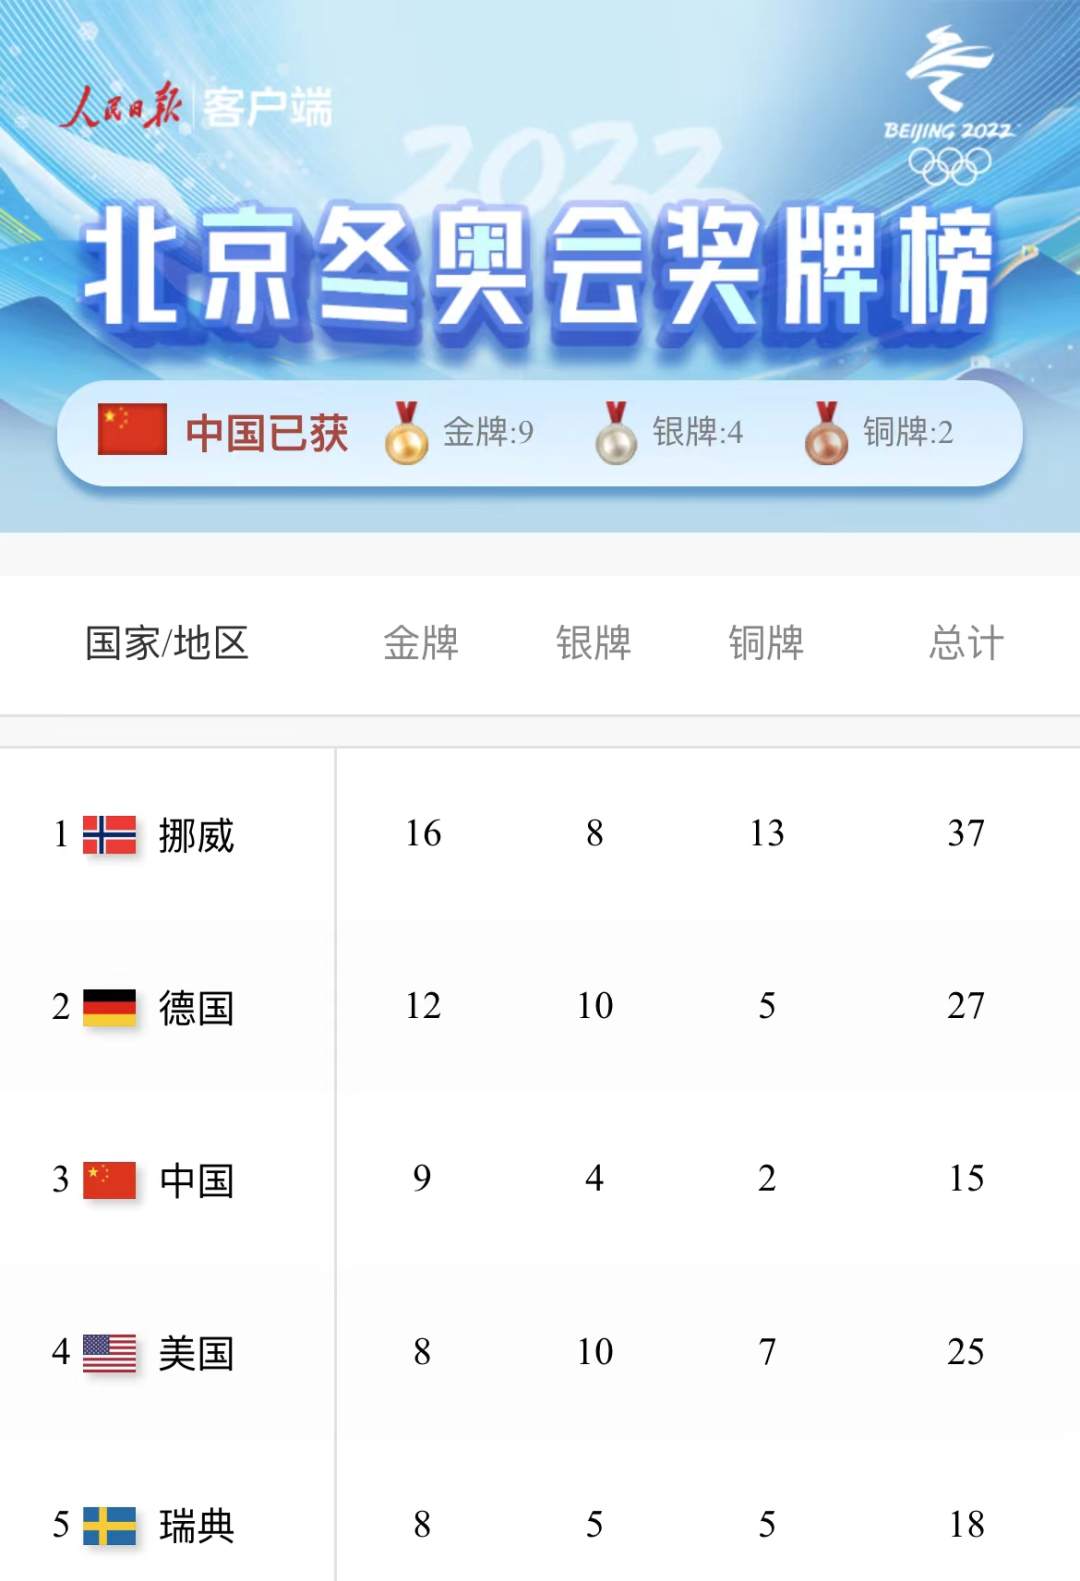 北京冬奥会所有比赛结束，中国队9金4银2铜位列奖牌榜第三！